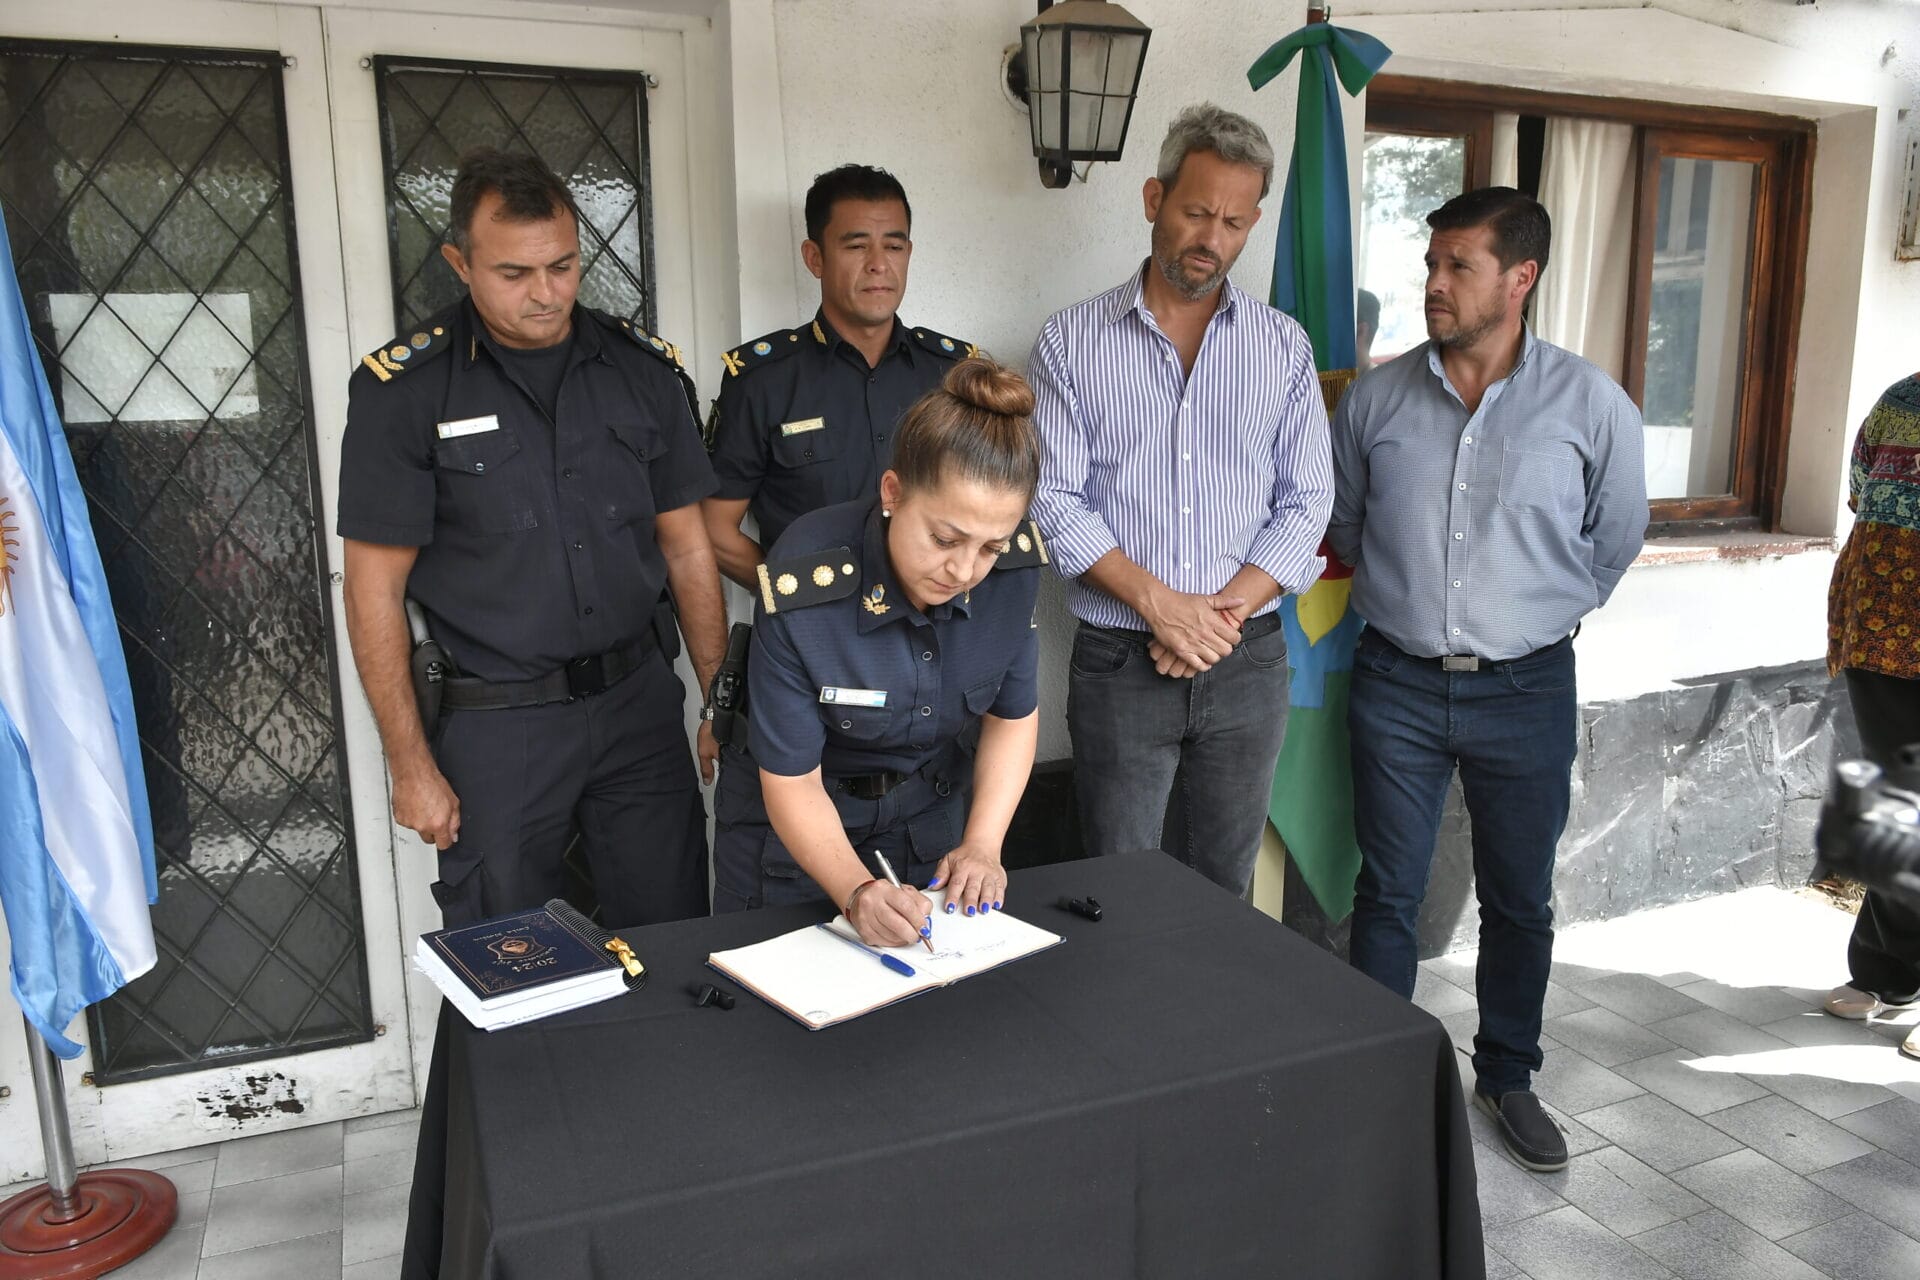 La comisaria Carla Martin es la nueva jefa de la Policía Comunal de Monte Hermoso